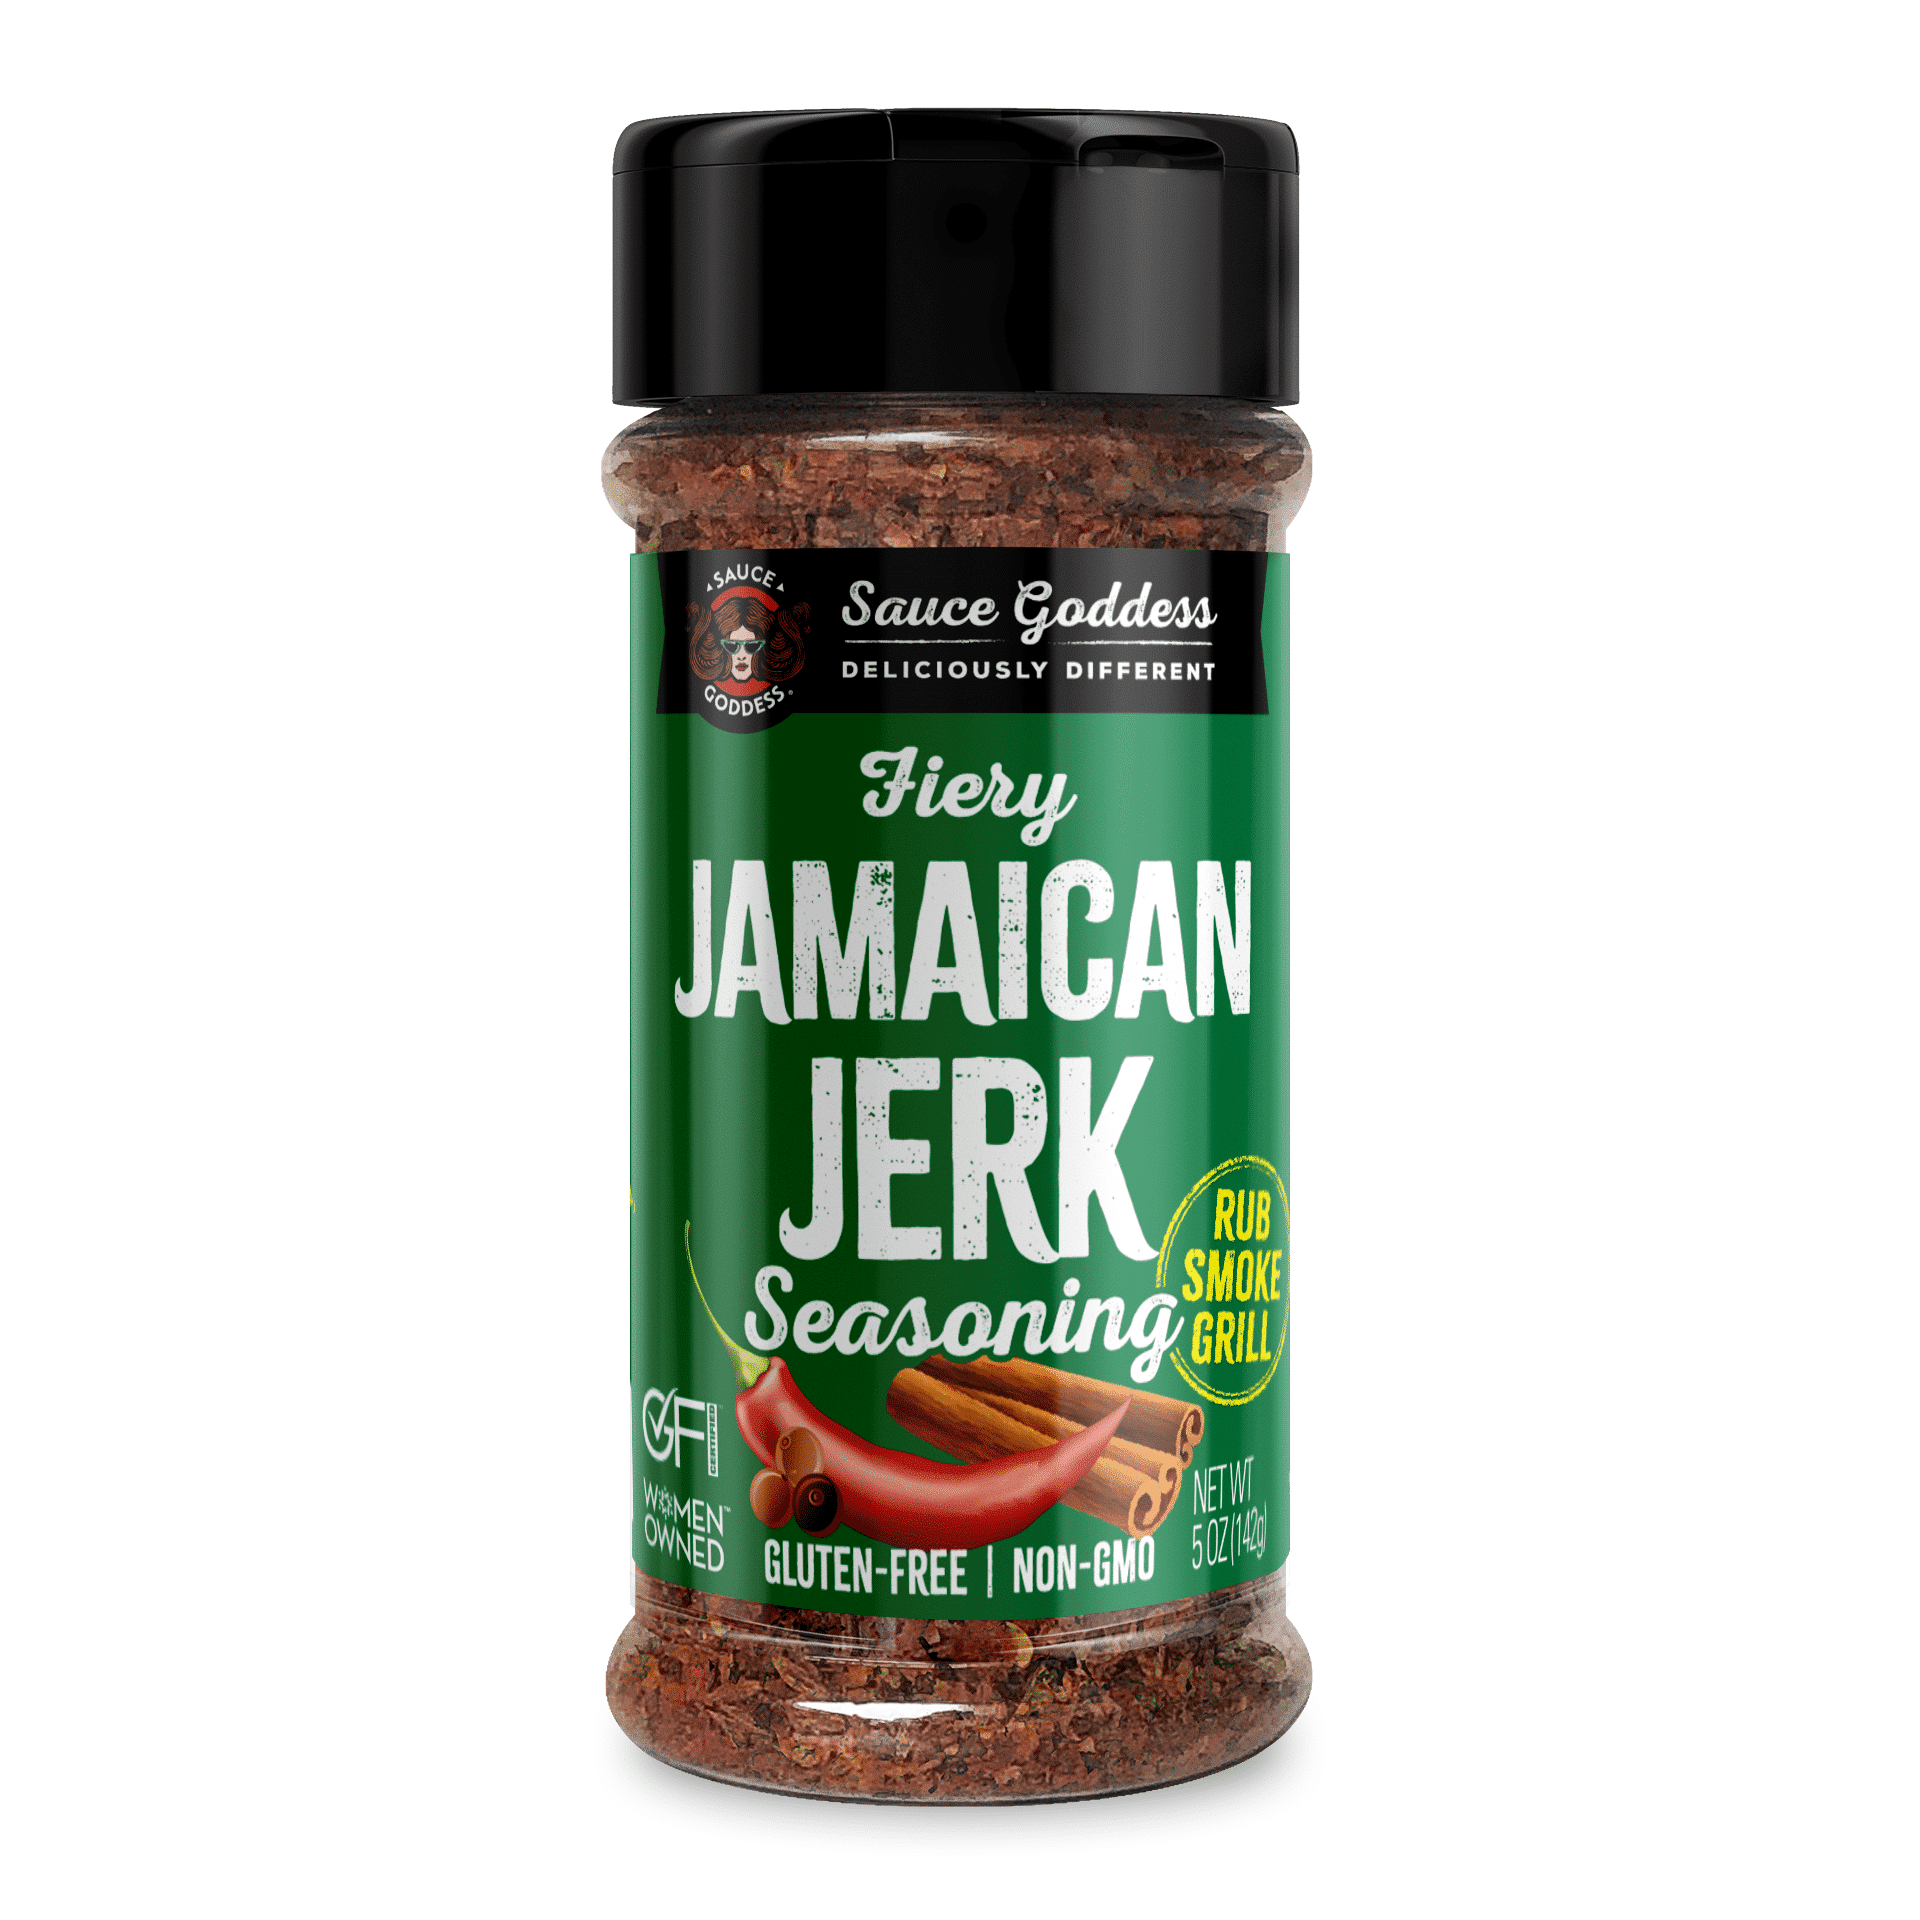 Fiery Jamaican Jerk Spice Shaker